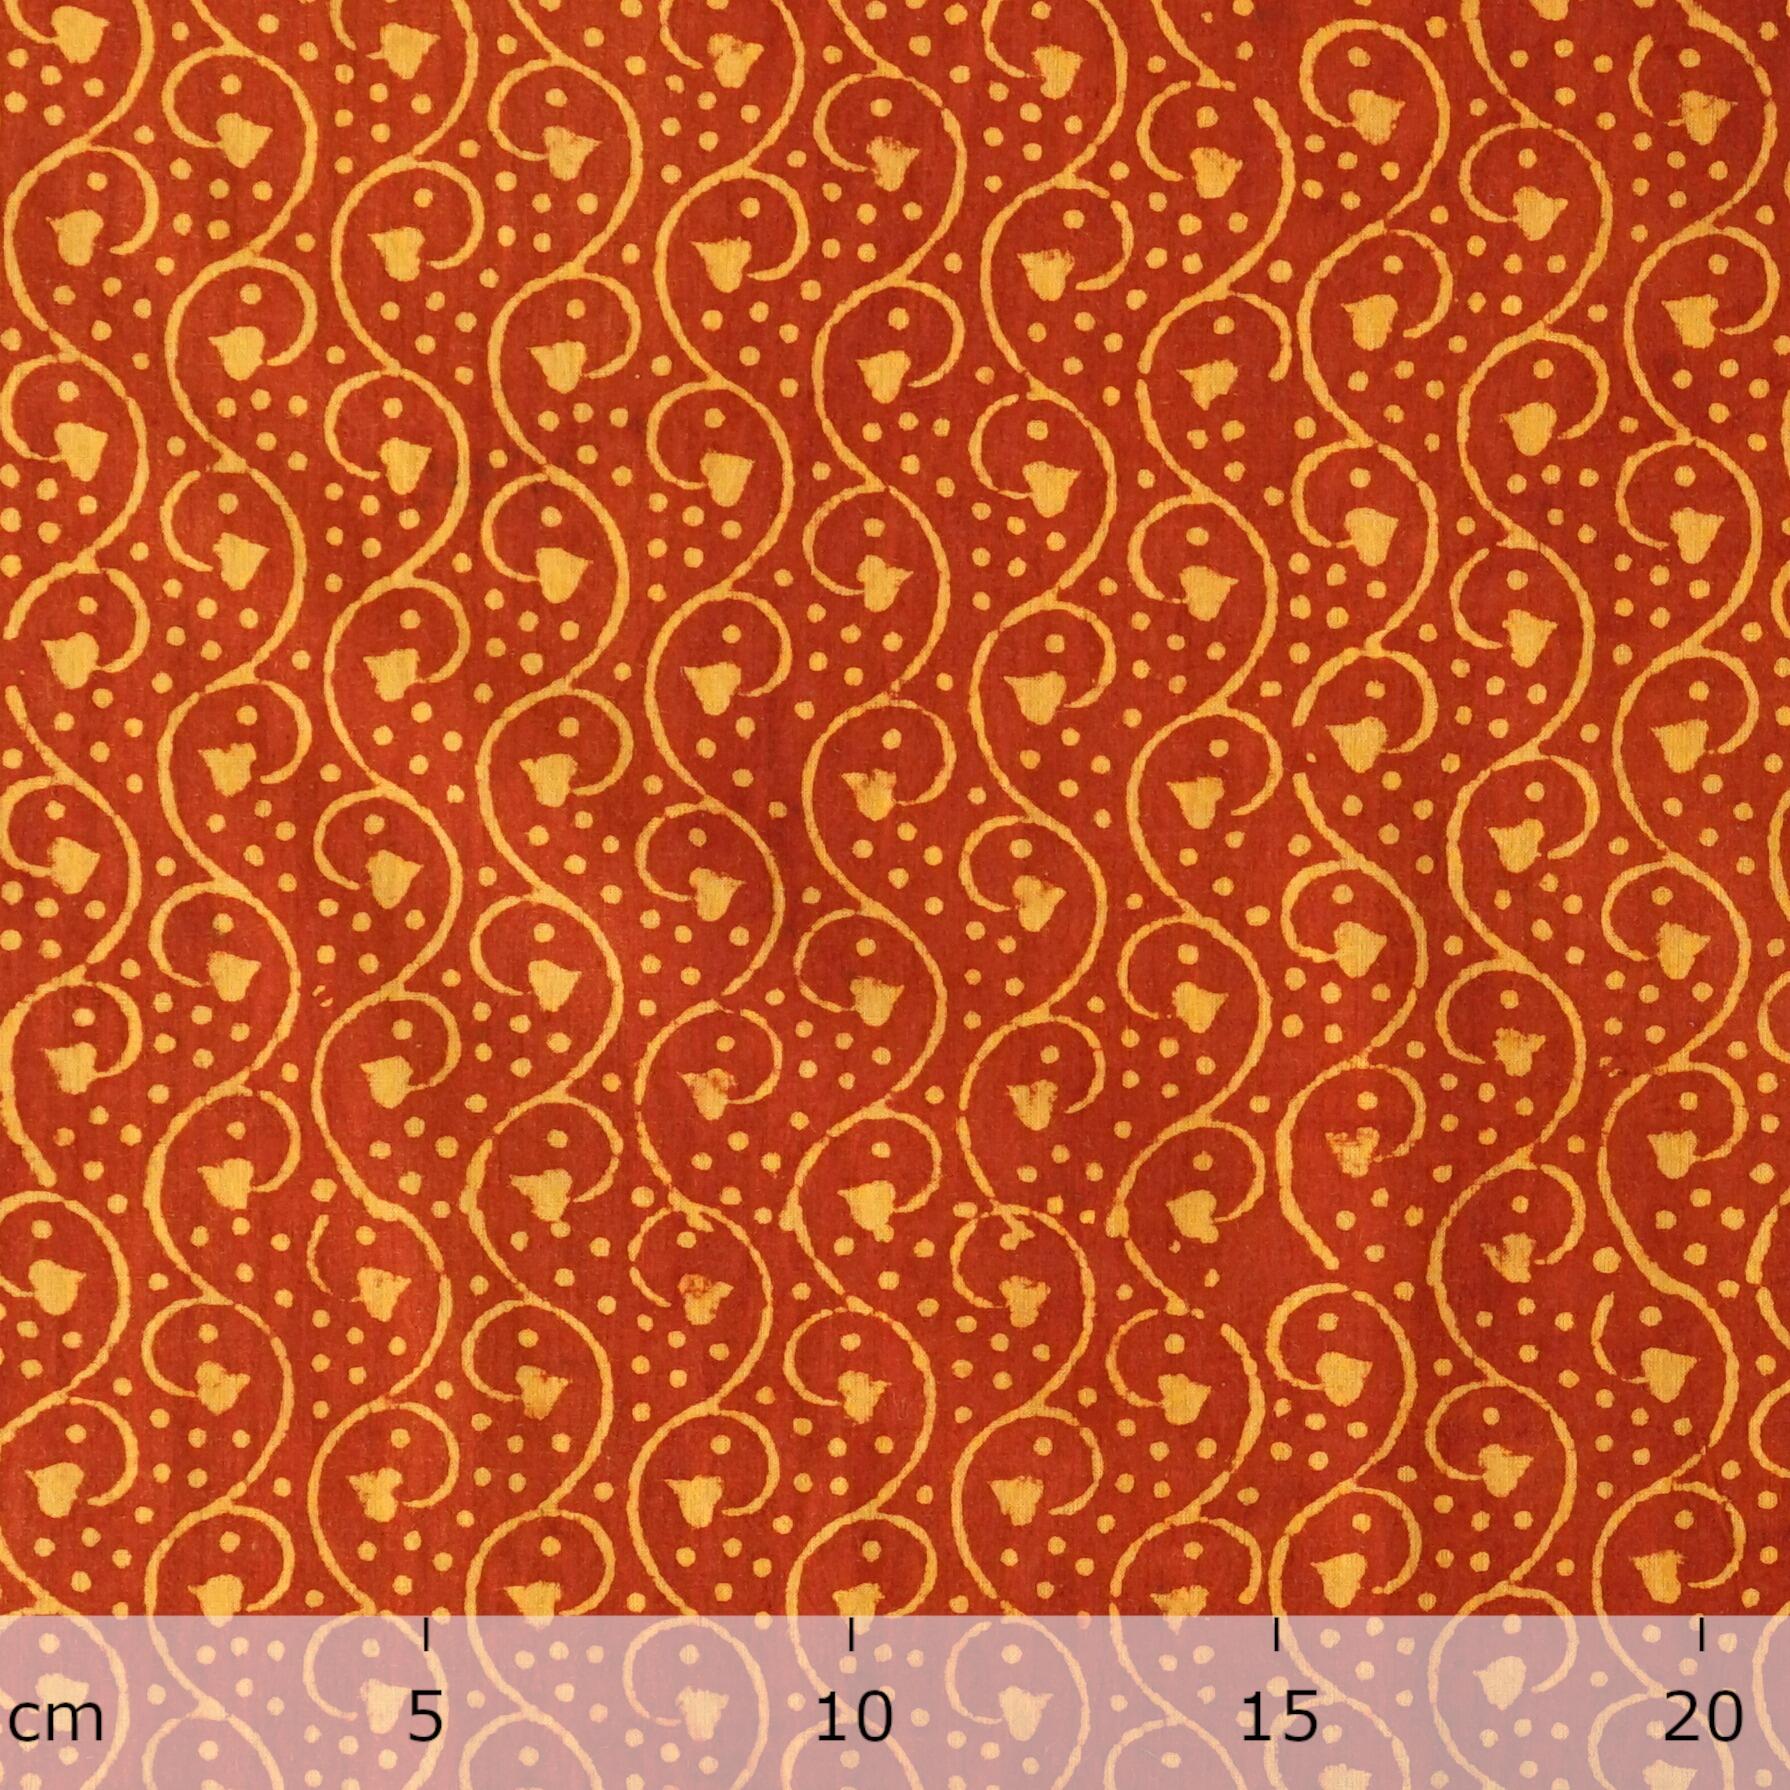 4 - AHM45 - Block-Printed Cotton - Komorebi Print - Turmeric Yellow & Alizarin Red Dyes - Ruler